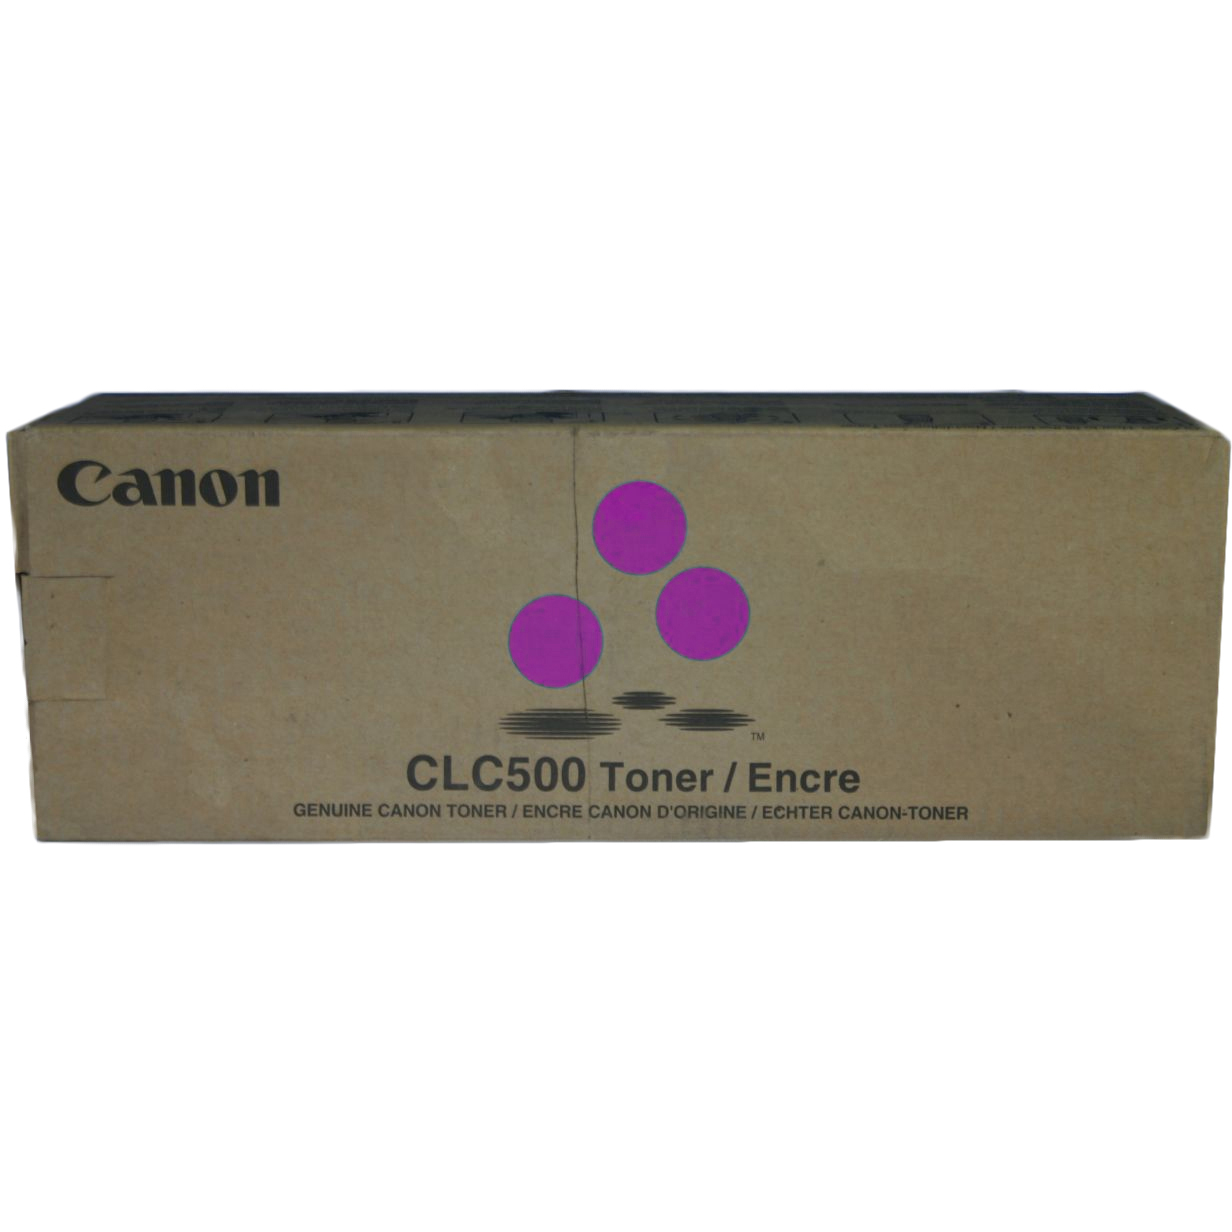 Original Canon CLC500 Magenta Toner Cartridge (CLC500 MAGENTA)